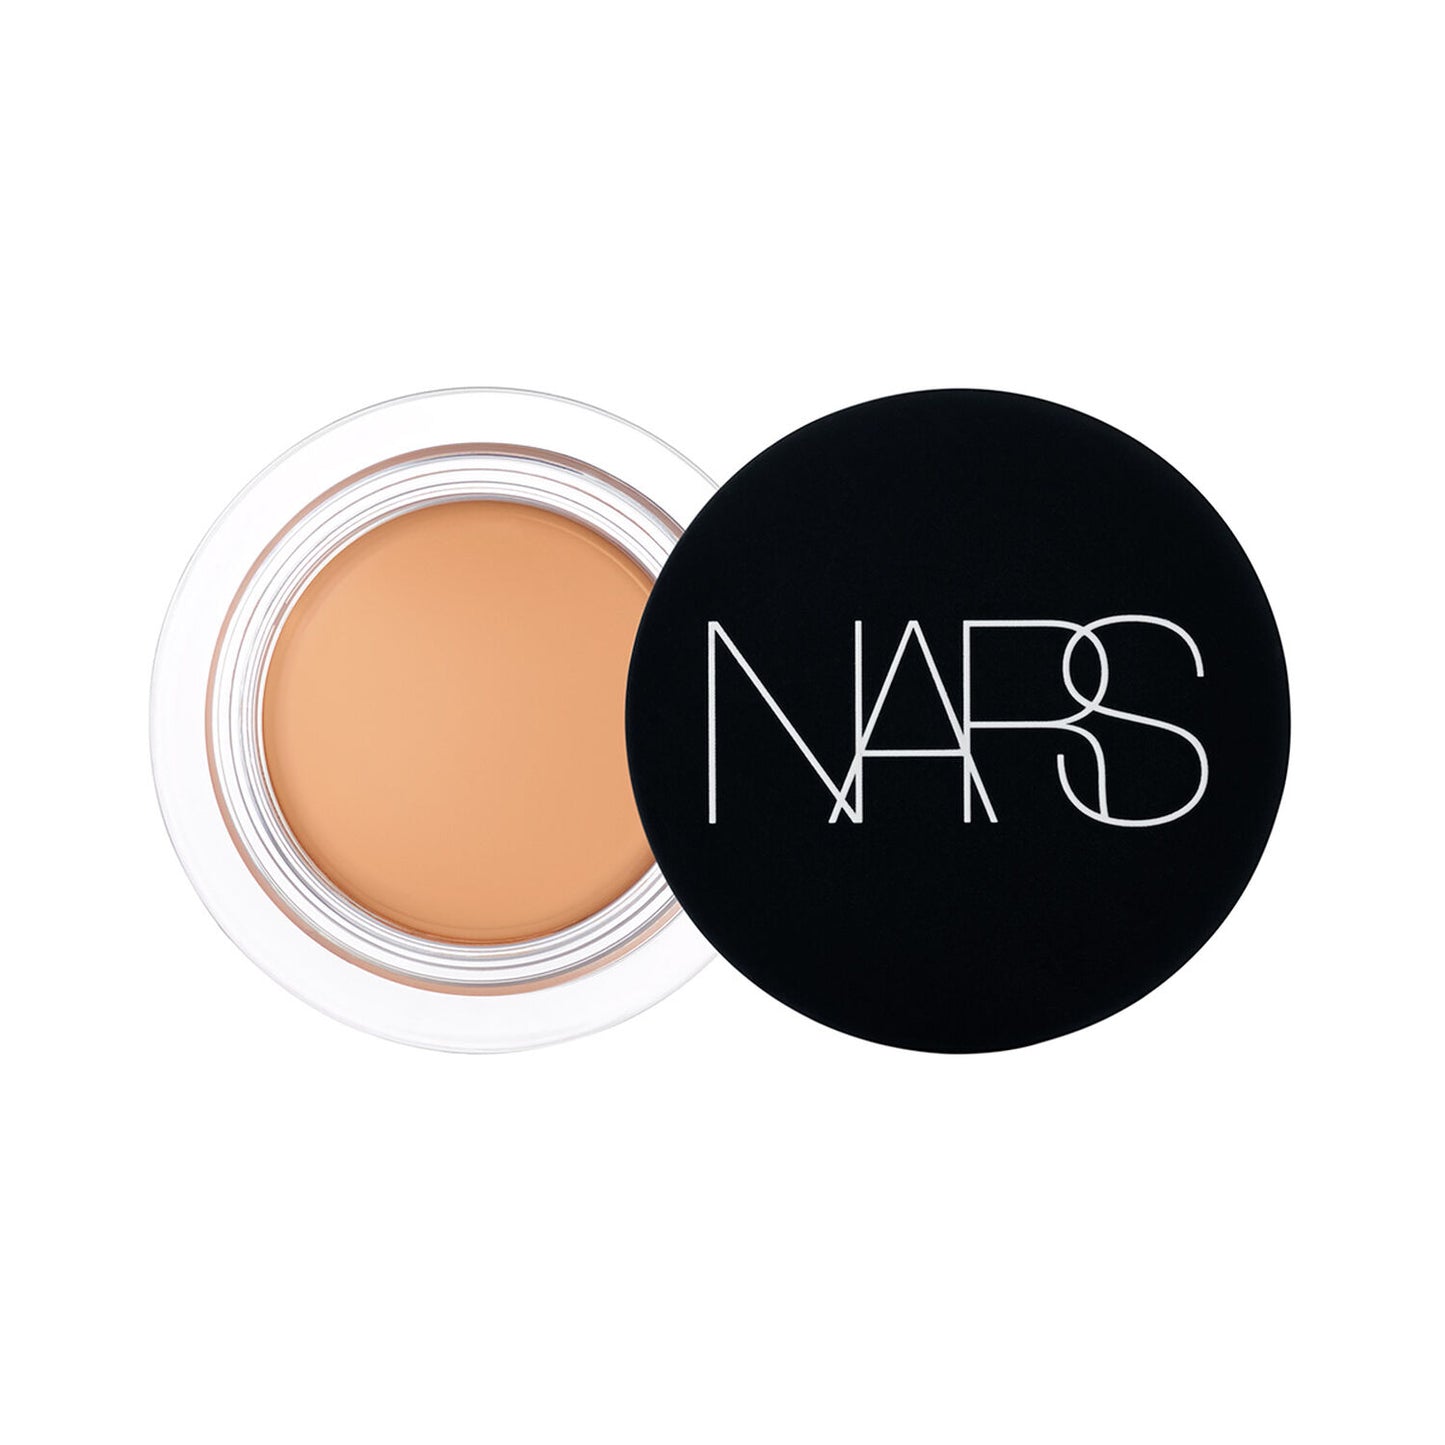 NARS Soft Matte Complete Concealer- Ginger